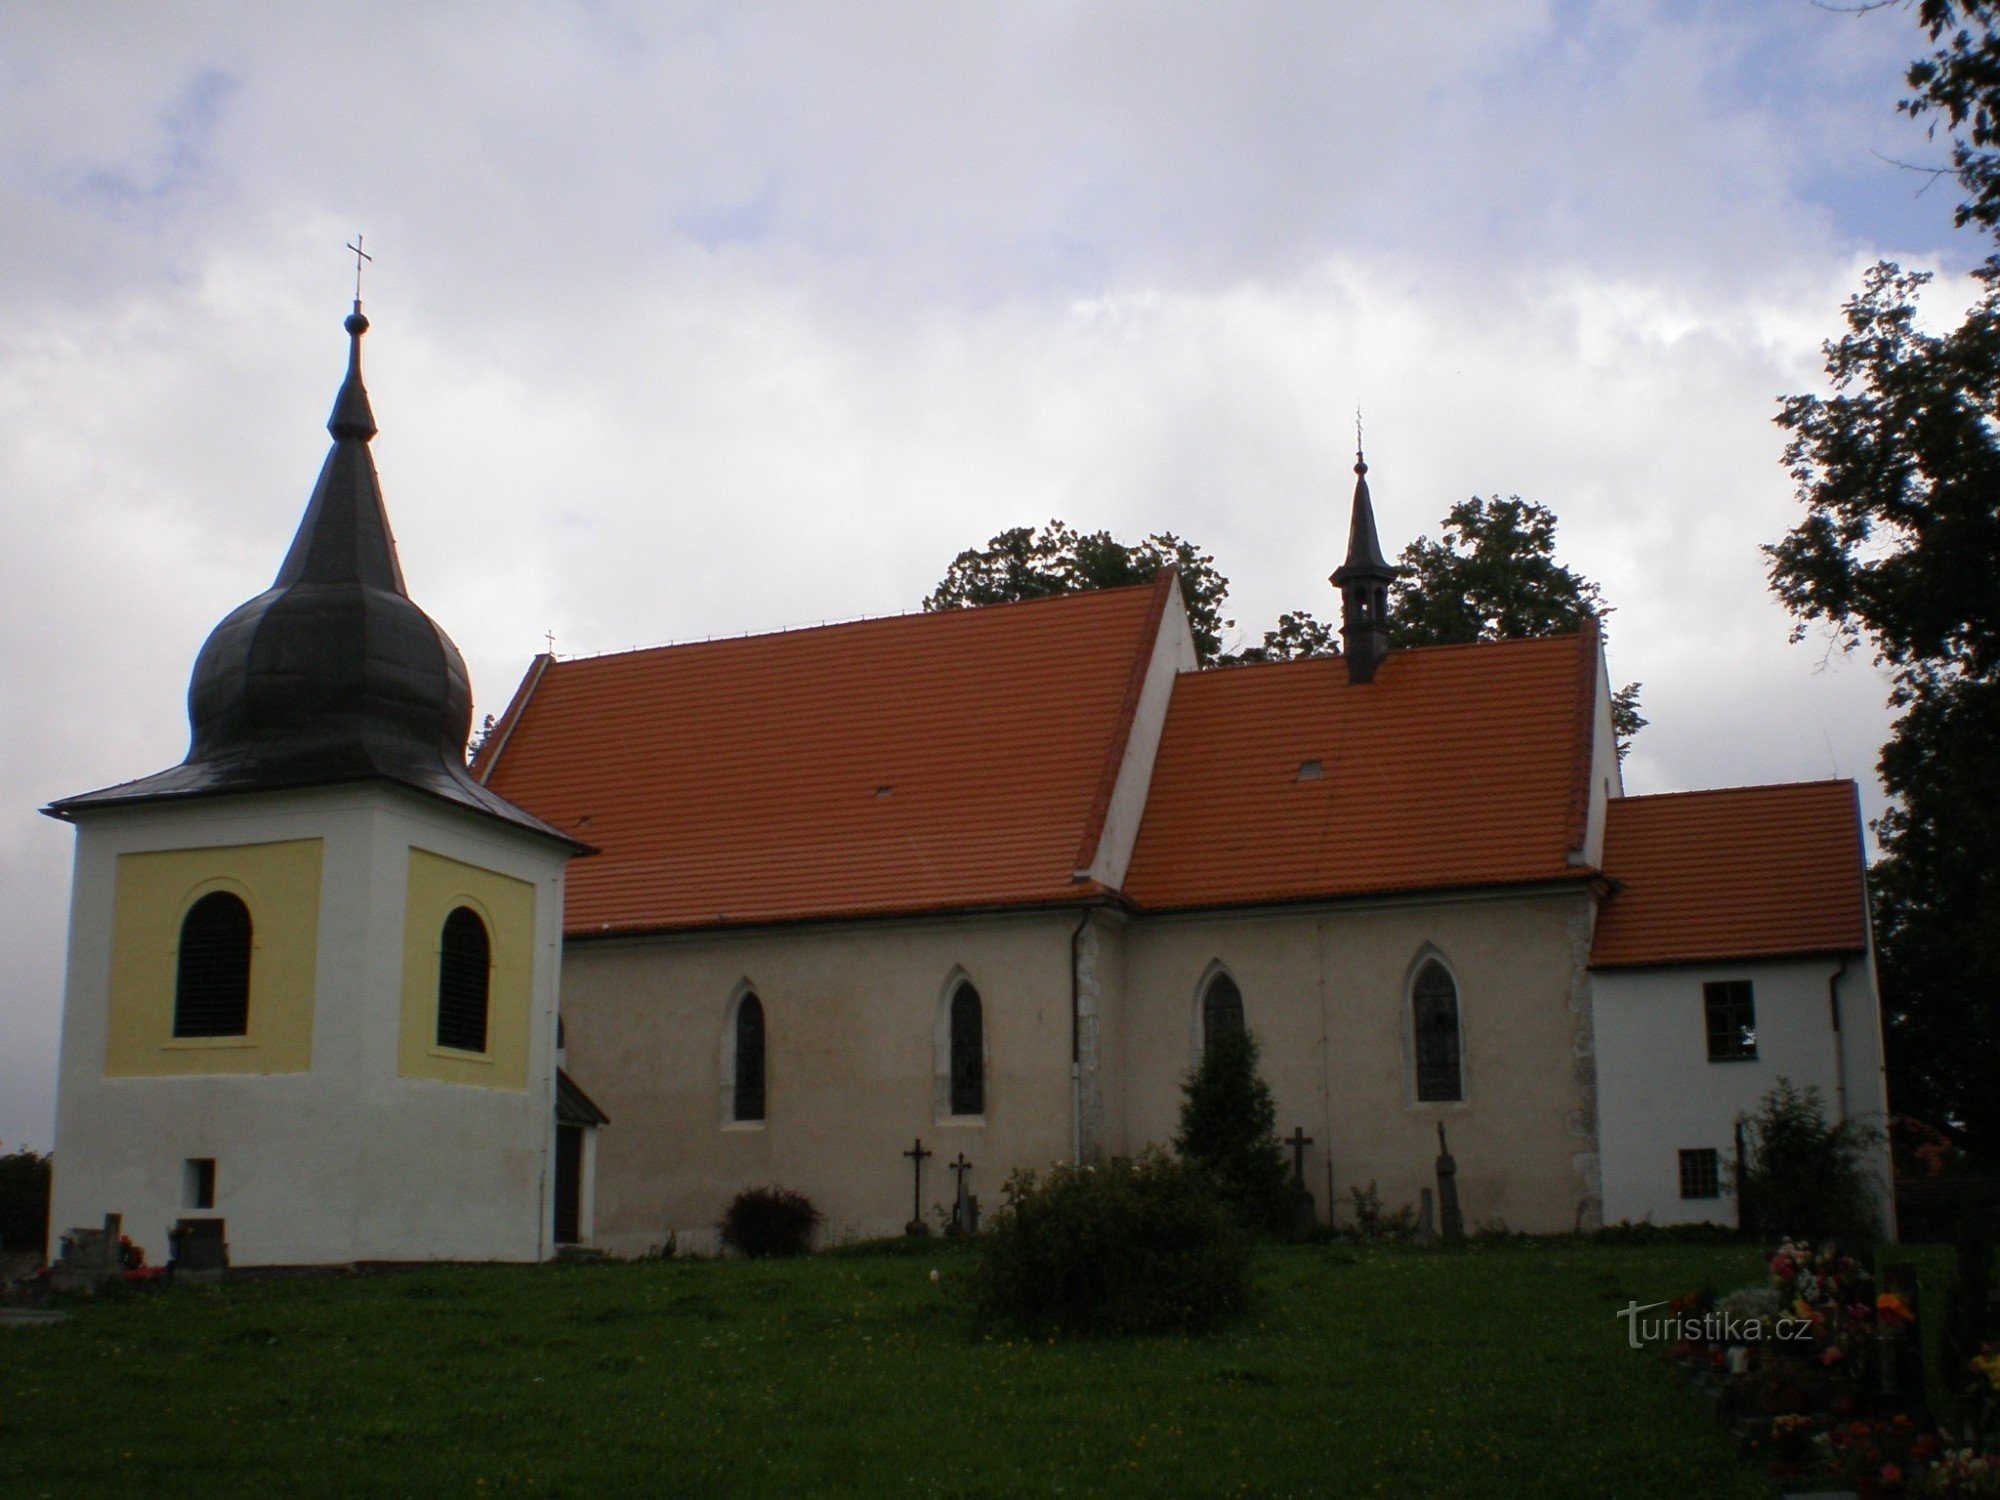 Hvožďany - Kerk van de Visitatie van P. Mary en St. Procopius